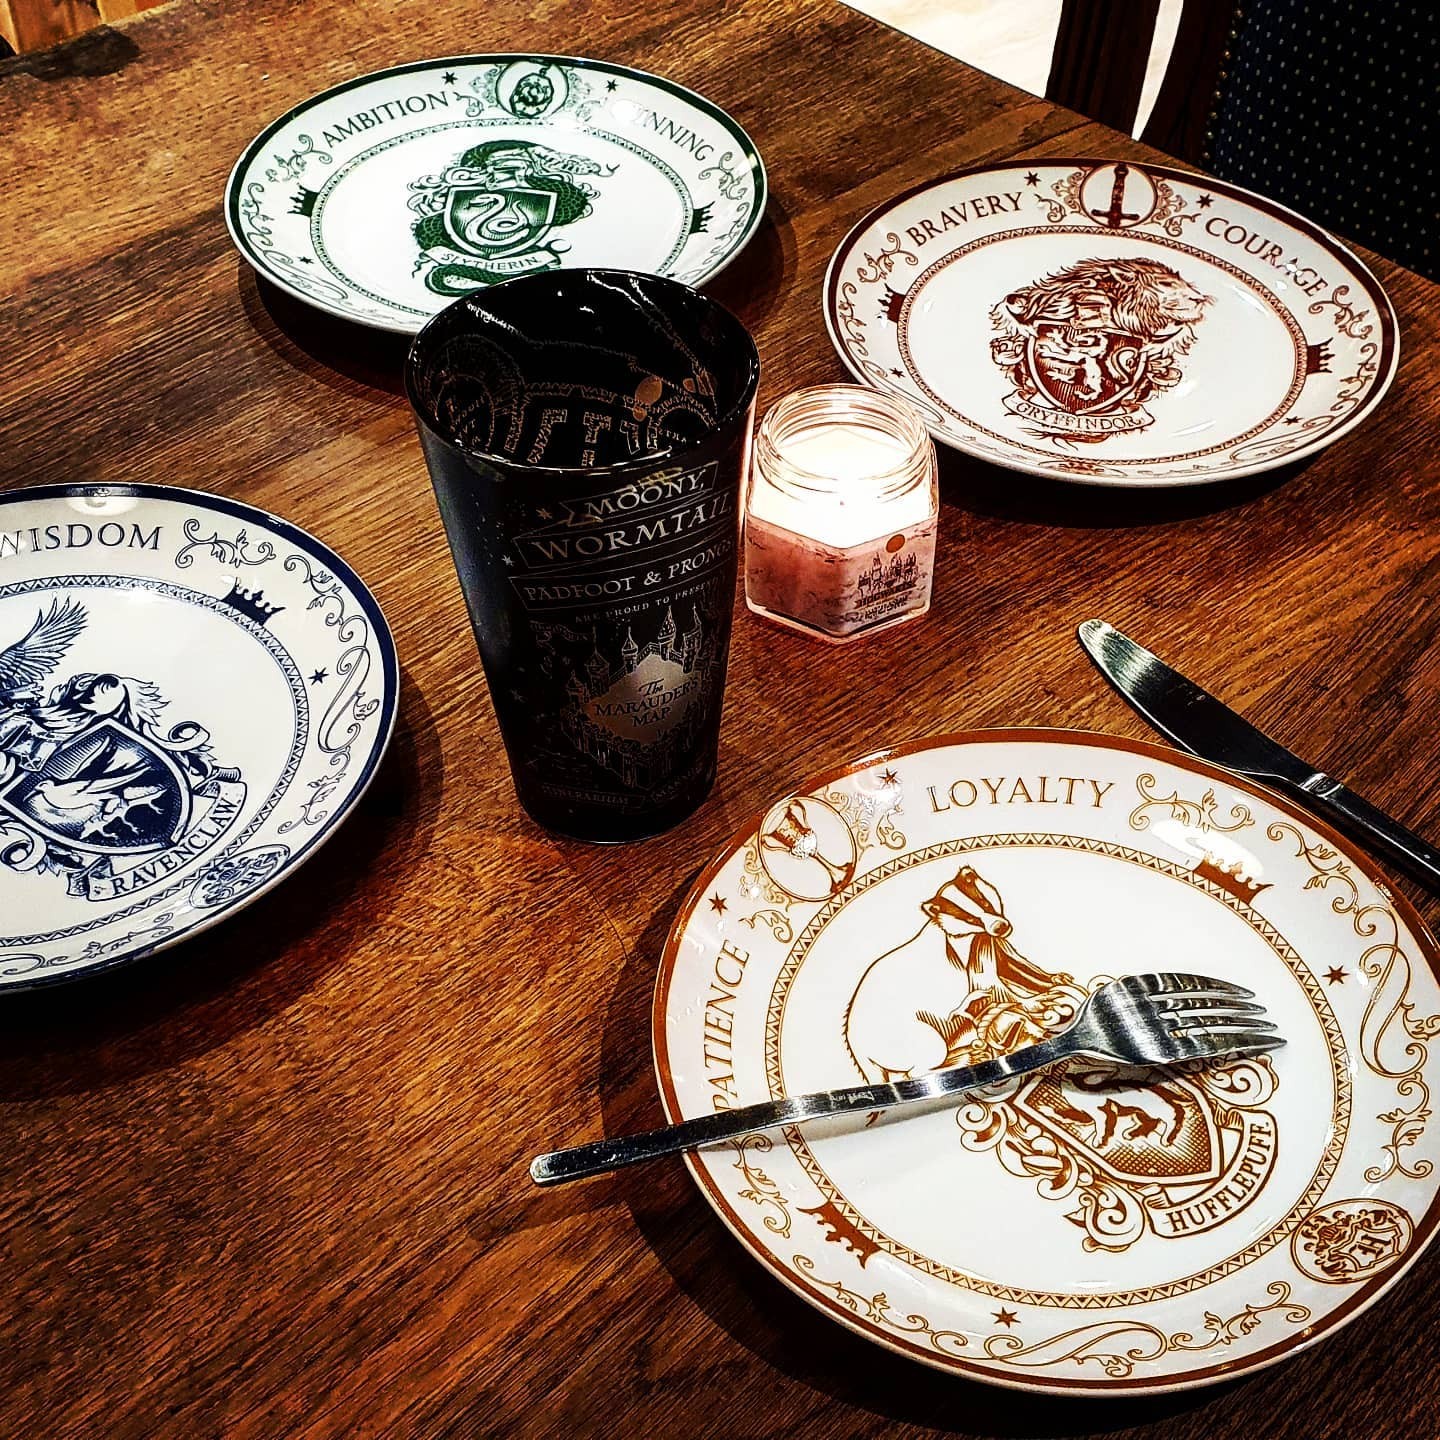 Goodies, Assiettes porcelaine Harry Potter Poudlard Lot de 4 (Cuisine,  Film, Goodies, Harry Potter, Maison)